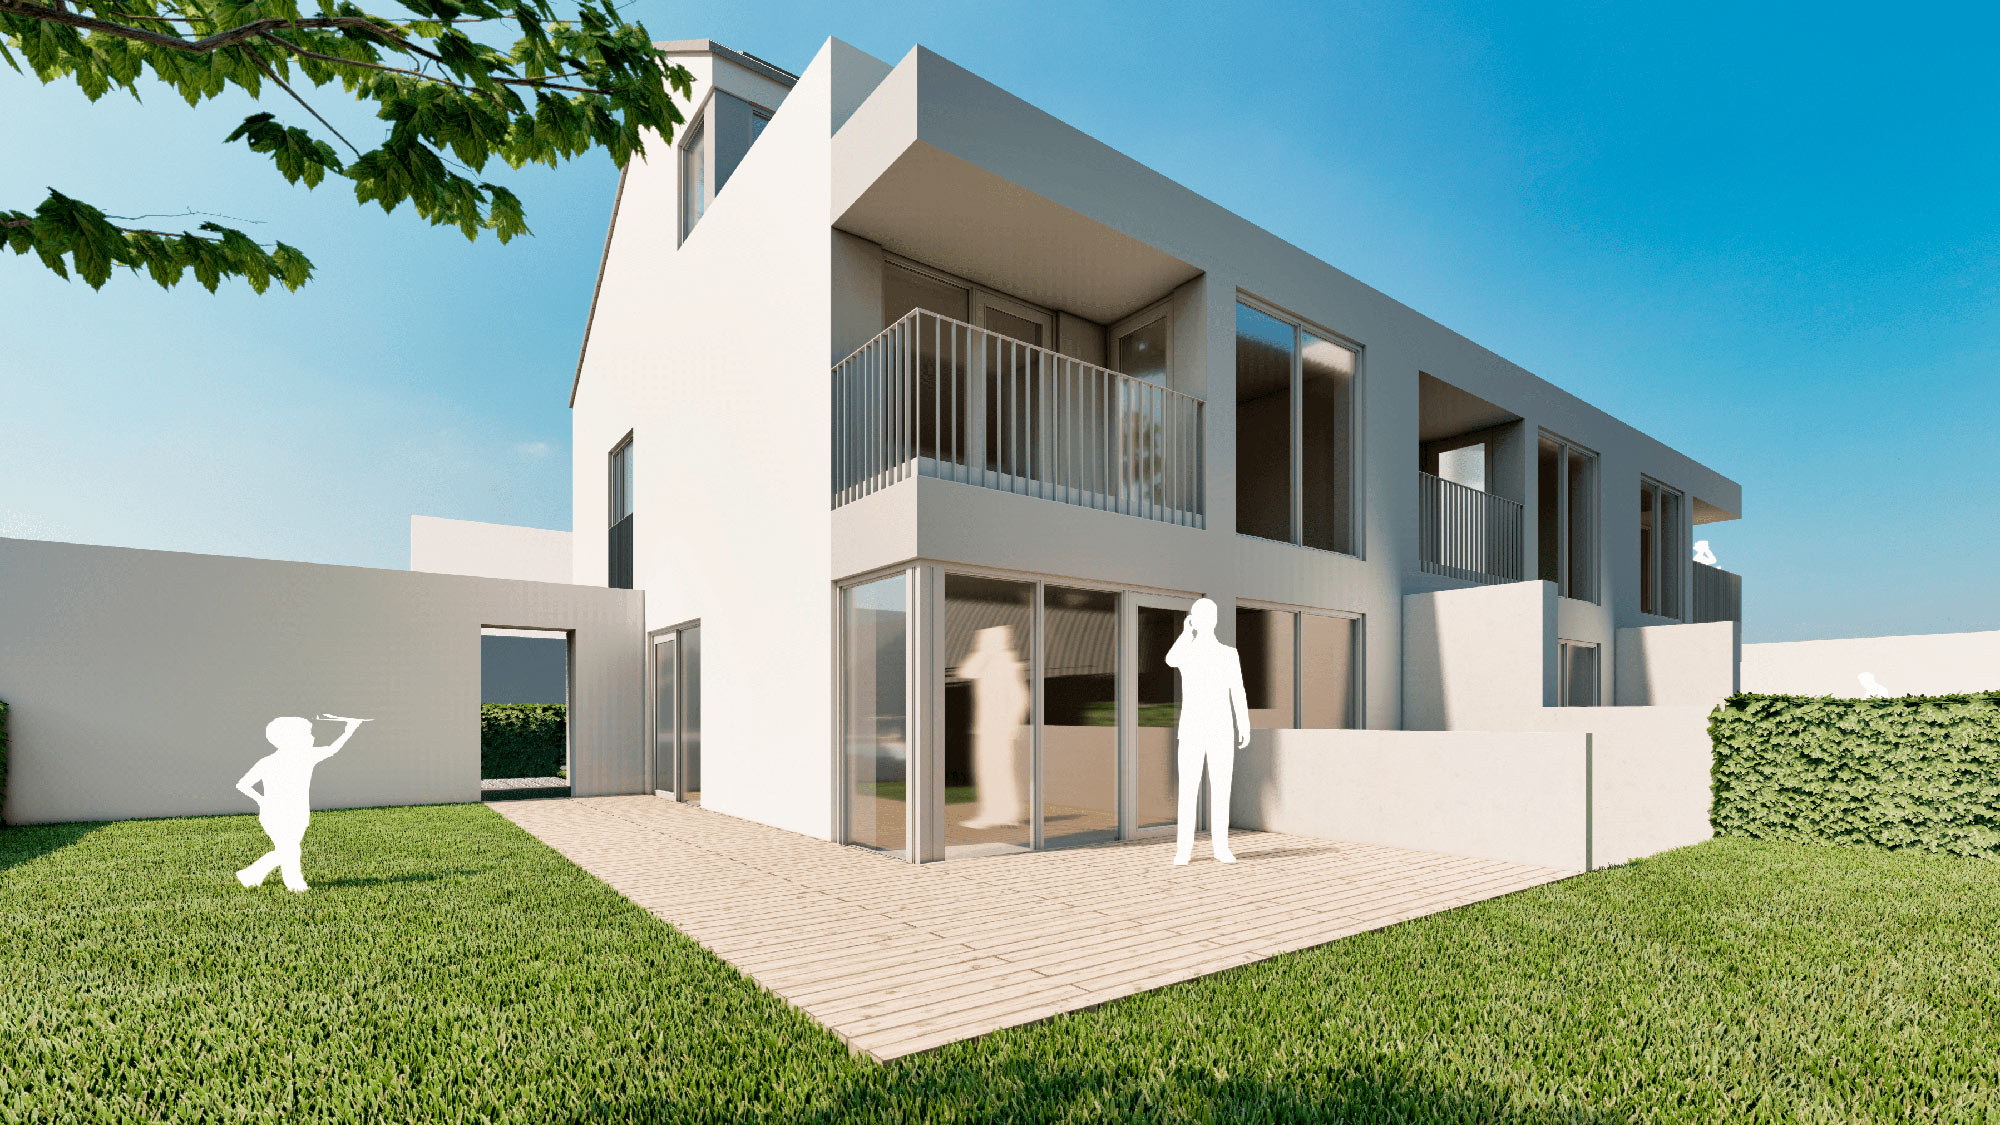 05Neubauprojekt: Modernes Reihenmittelhaus in Rehinfelden Nollingen | Haus 2 - Ansicht 5